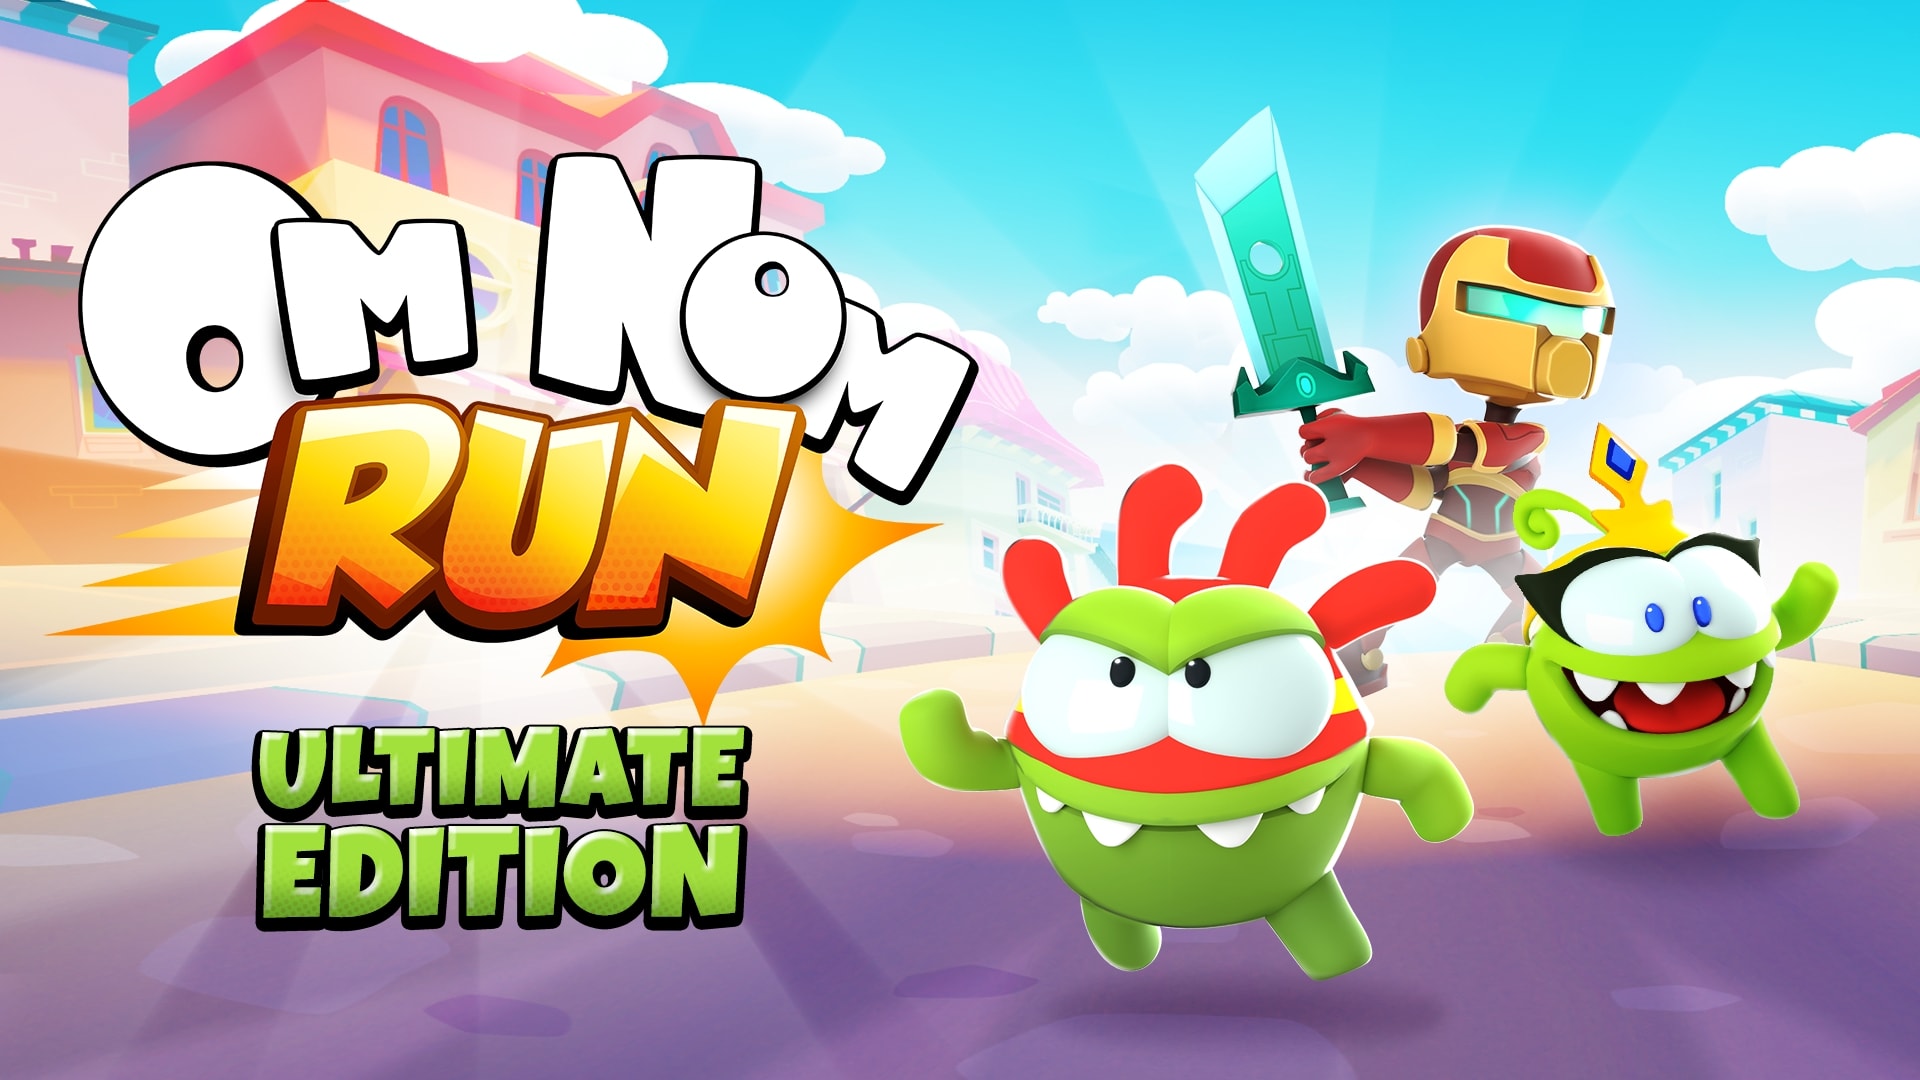 Om Nom: Run - Ultimate Edition